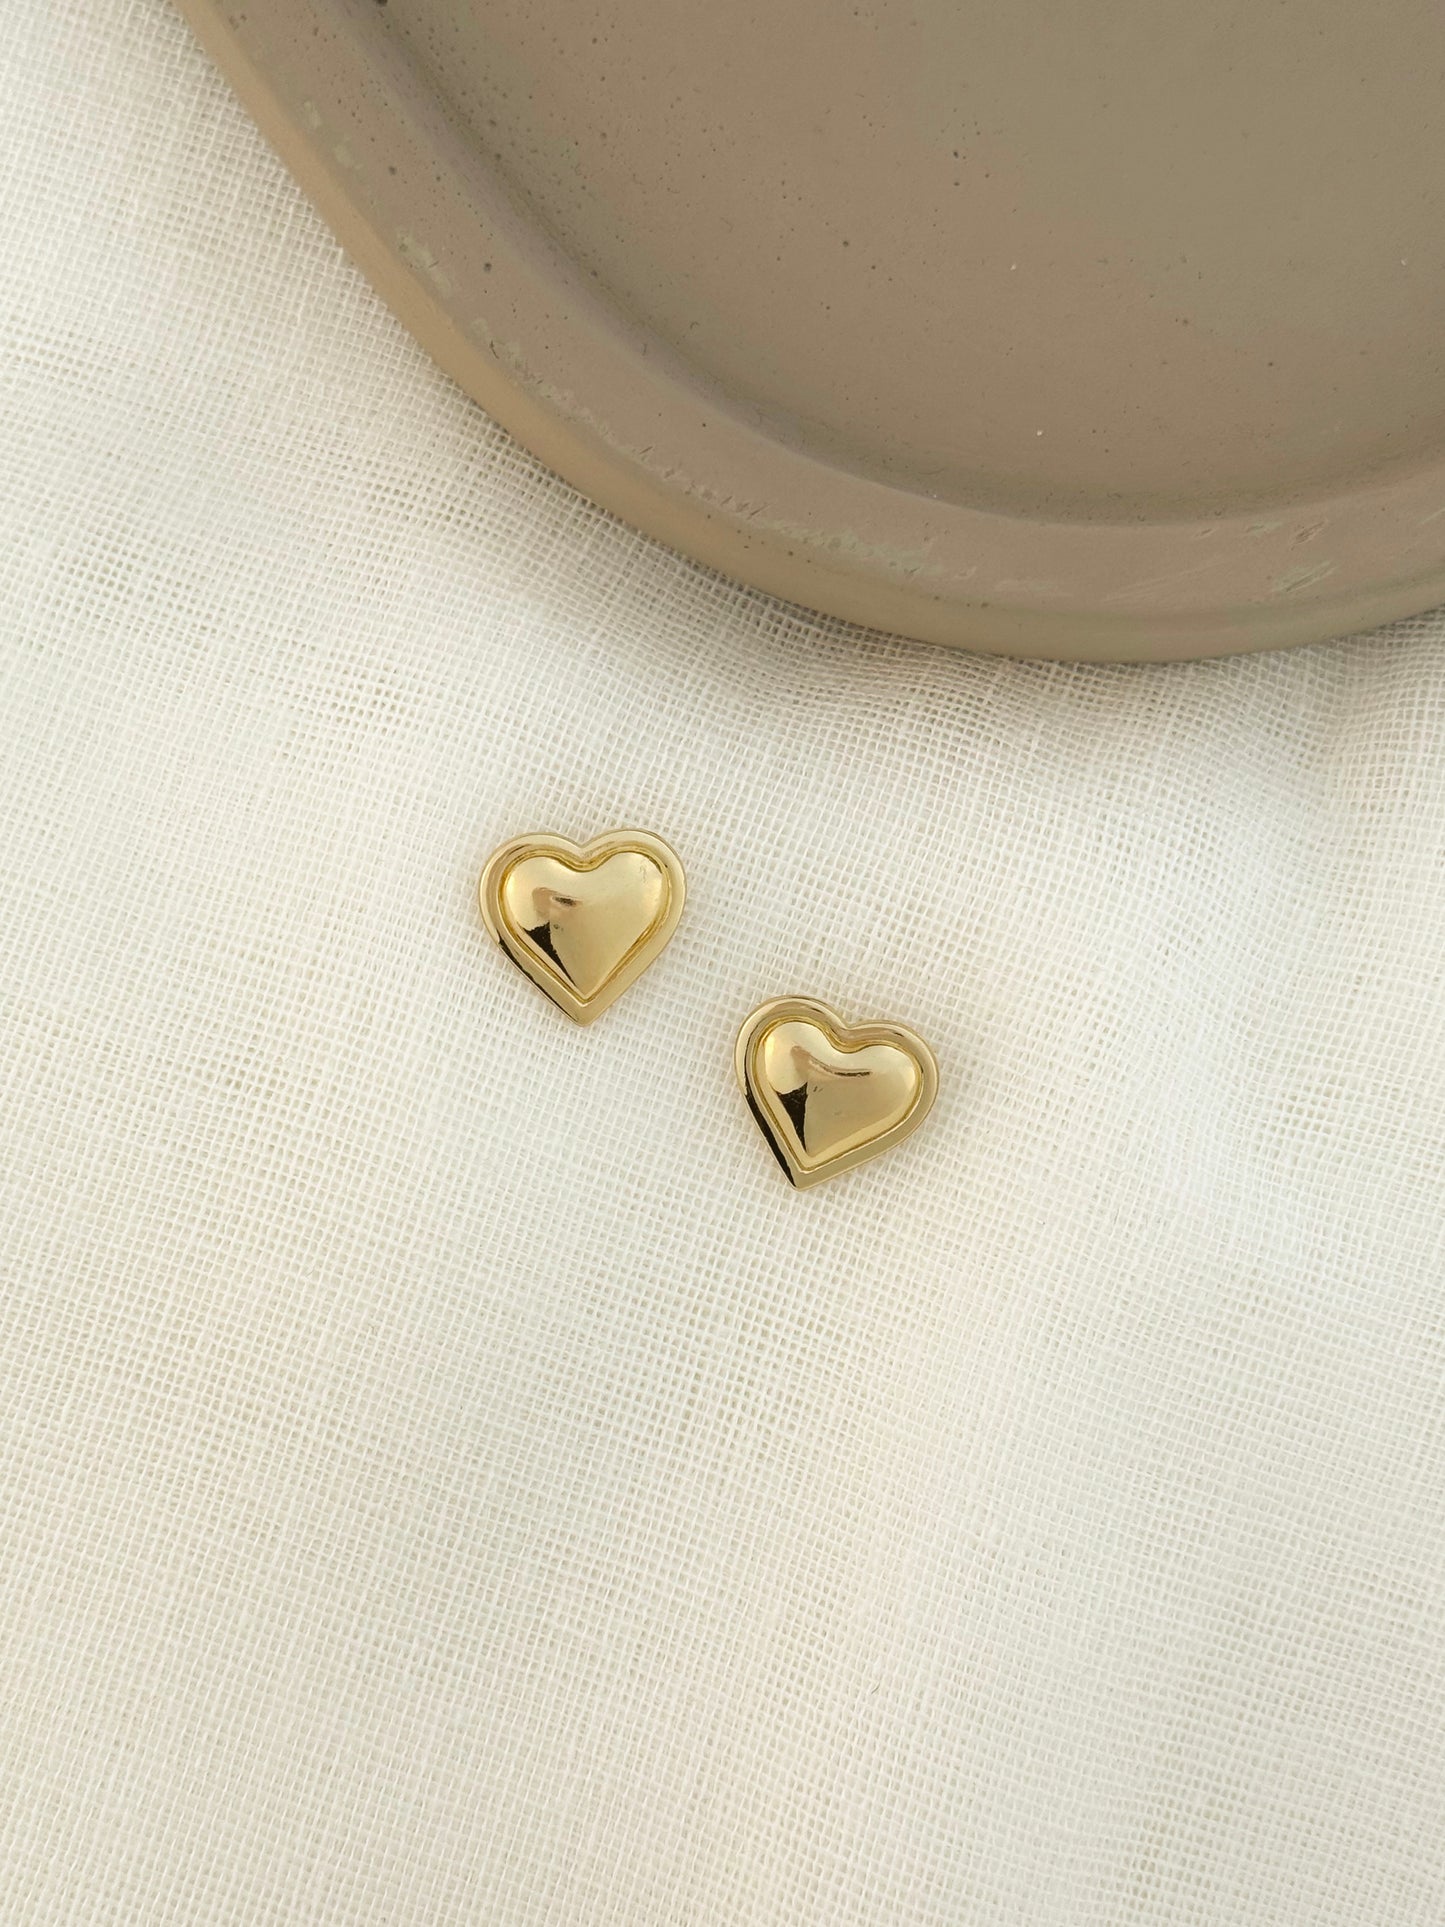 Simple heart earrings